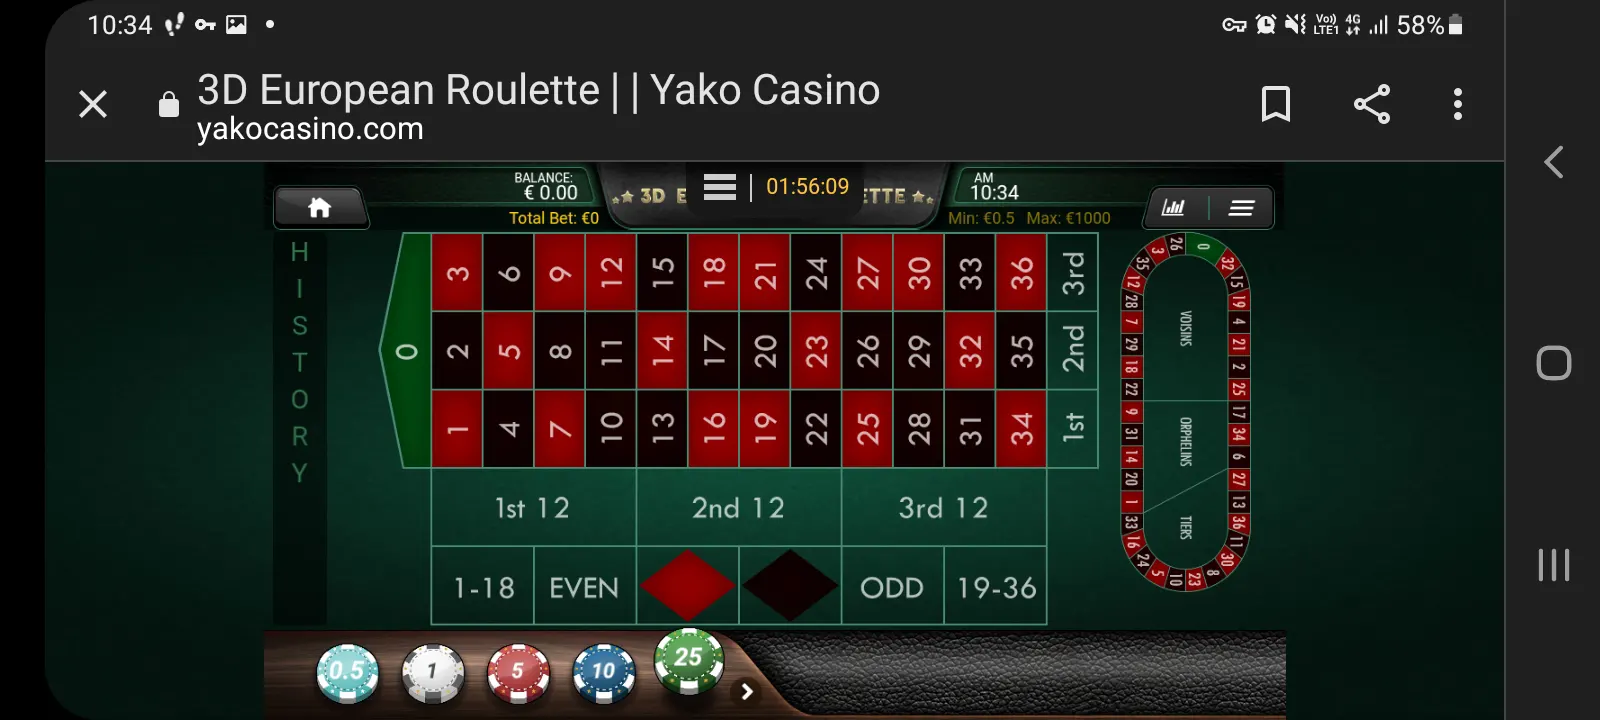 Yako casino app screenshot 4